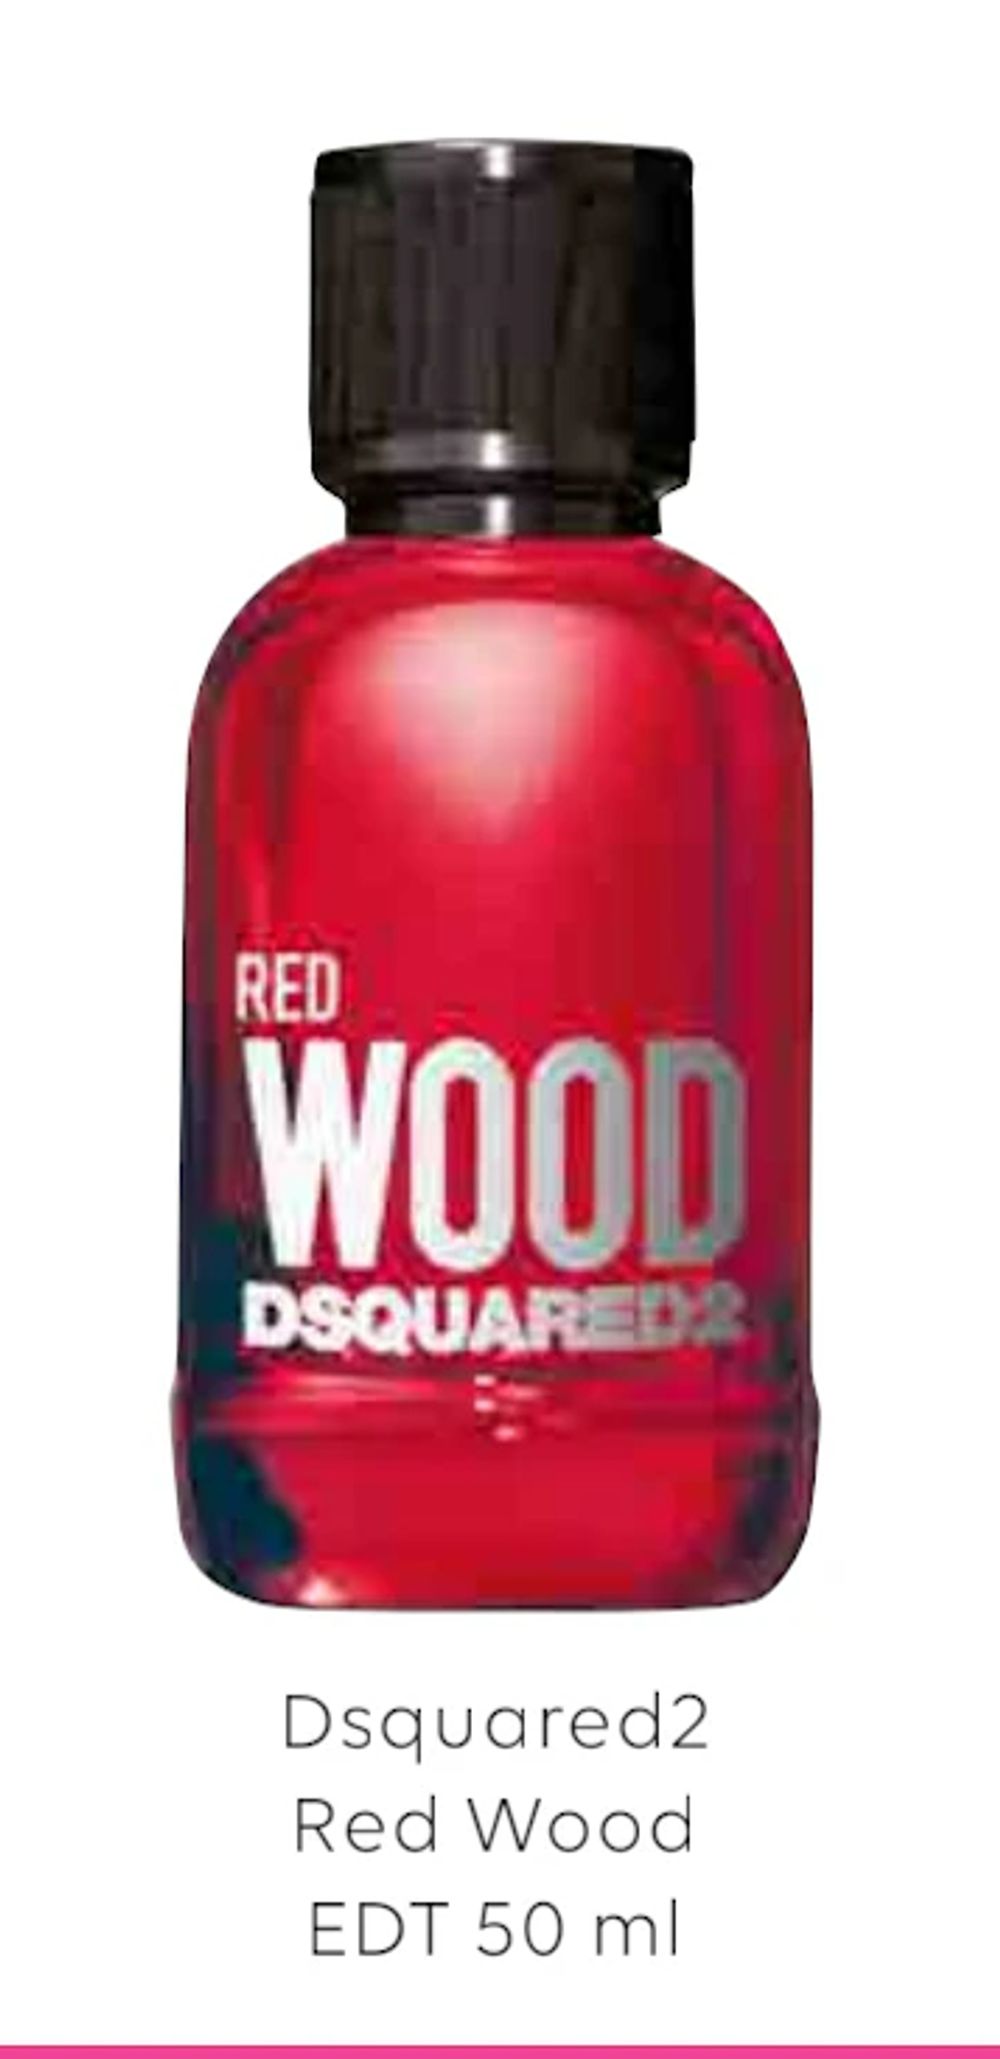 Tilbud på Dsquared2 Red Wood EDT 50 ml fra Scandlines Travel Shop til 159 kr.